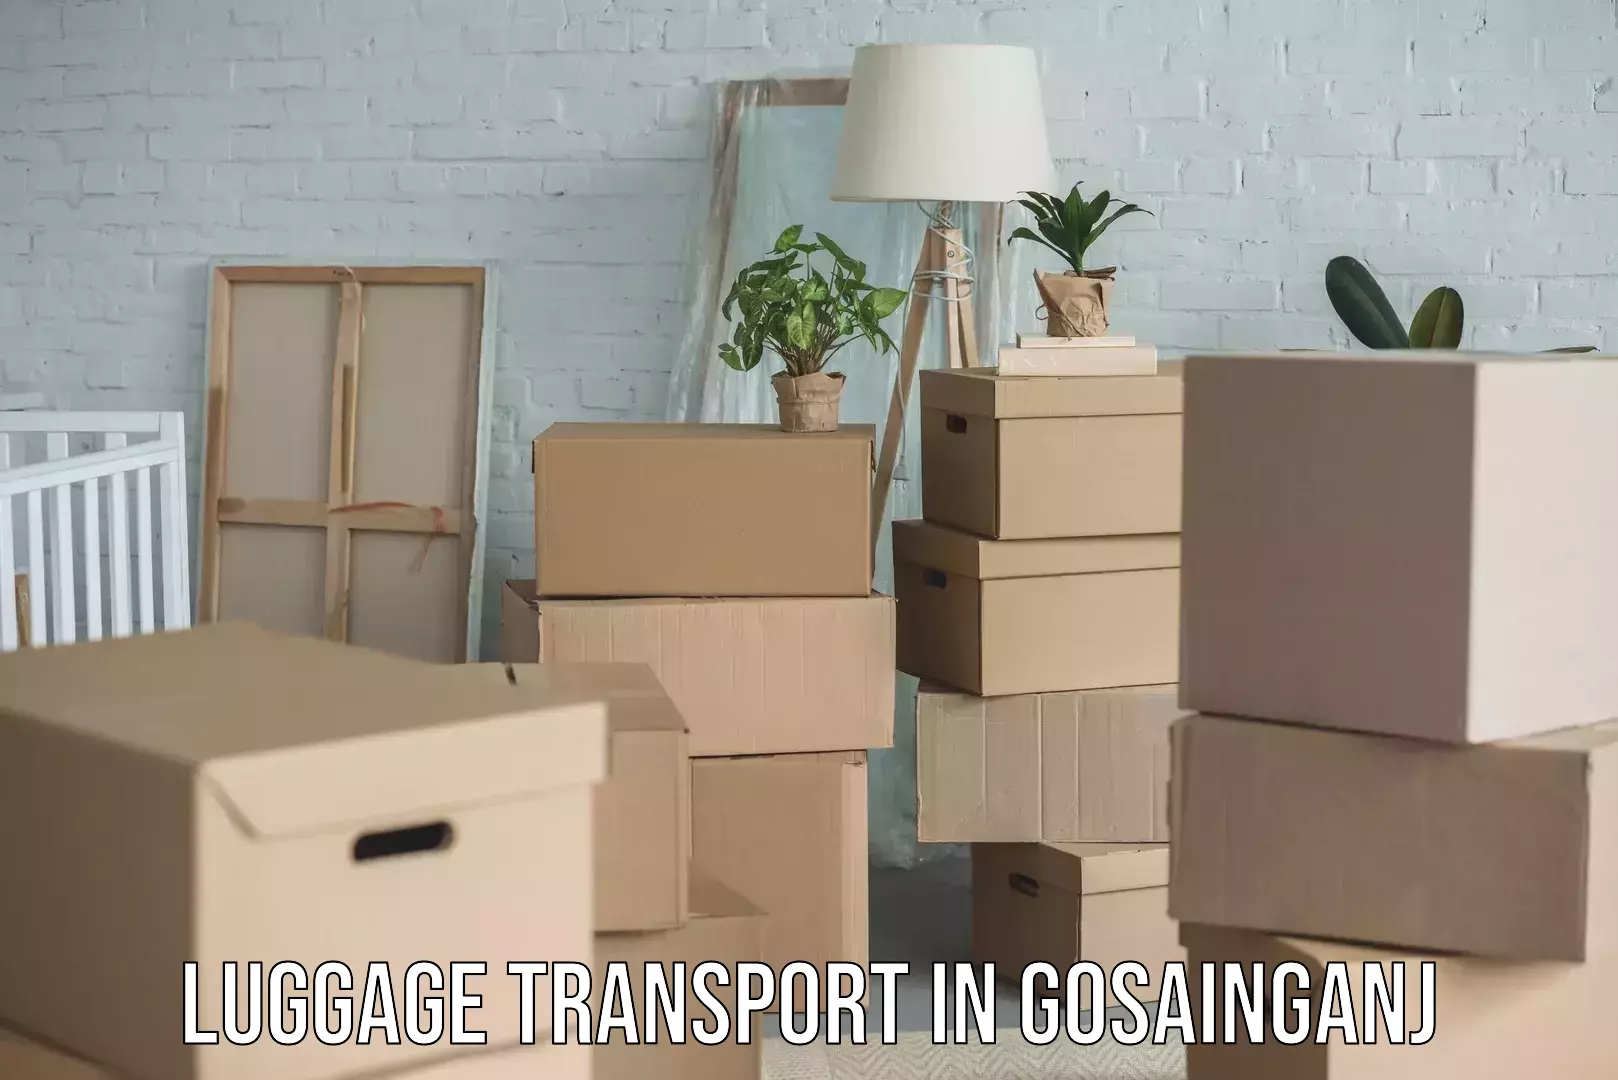 Luggage delivery optimization in Gosainganj